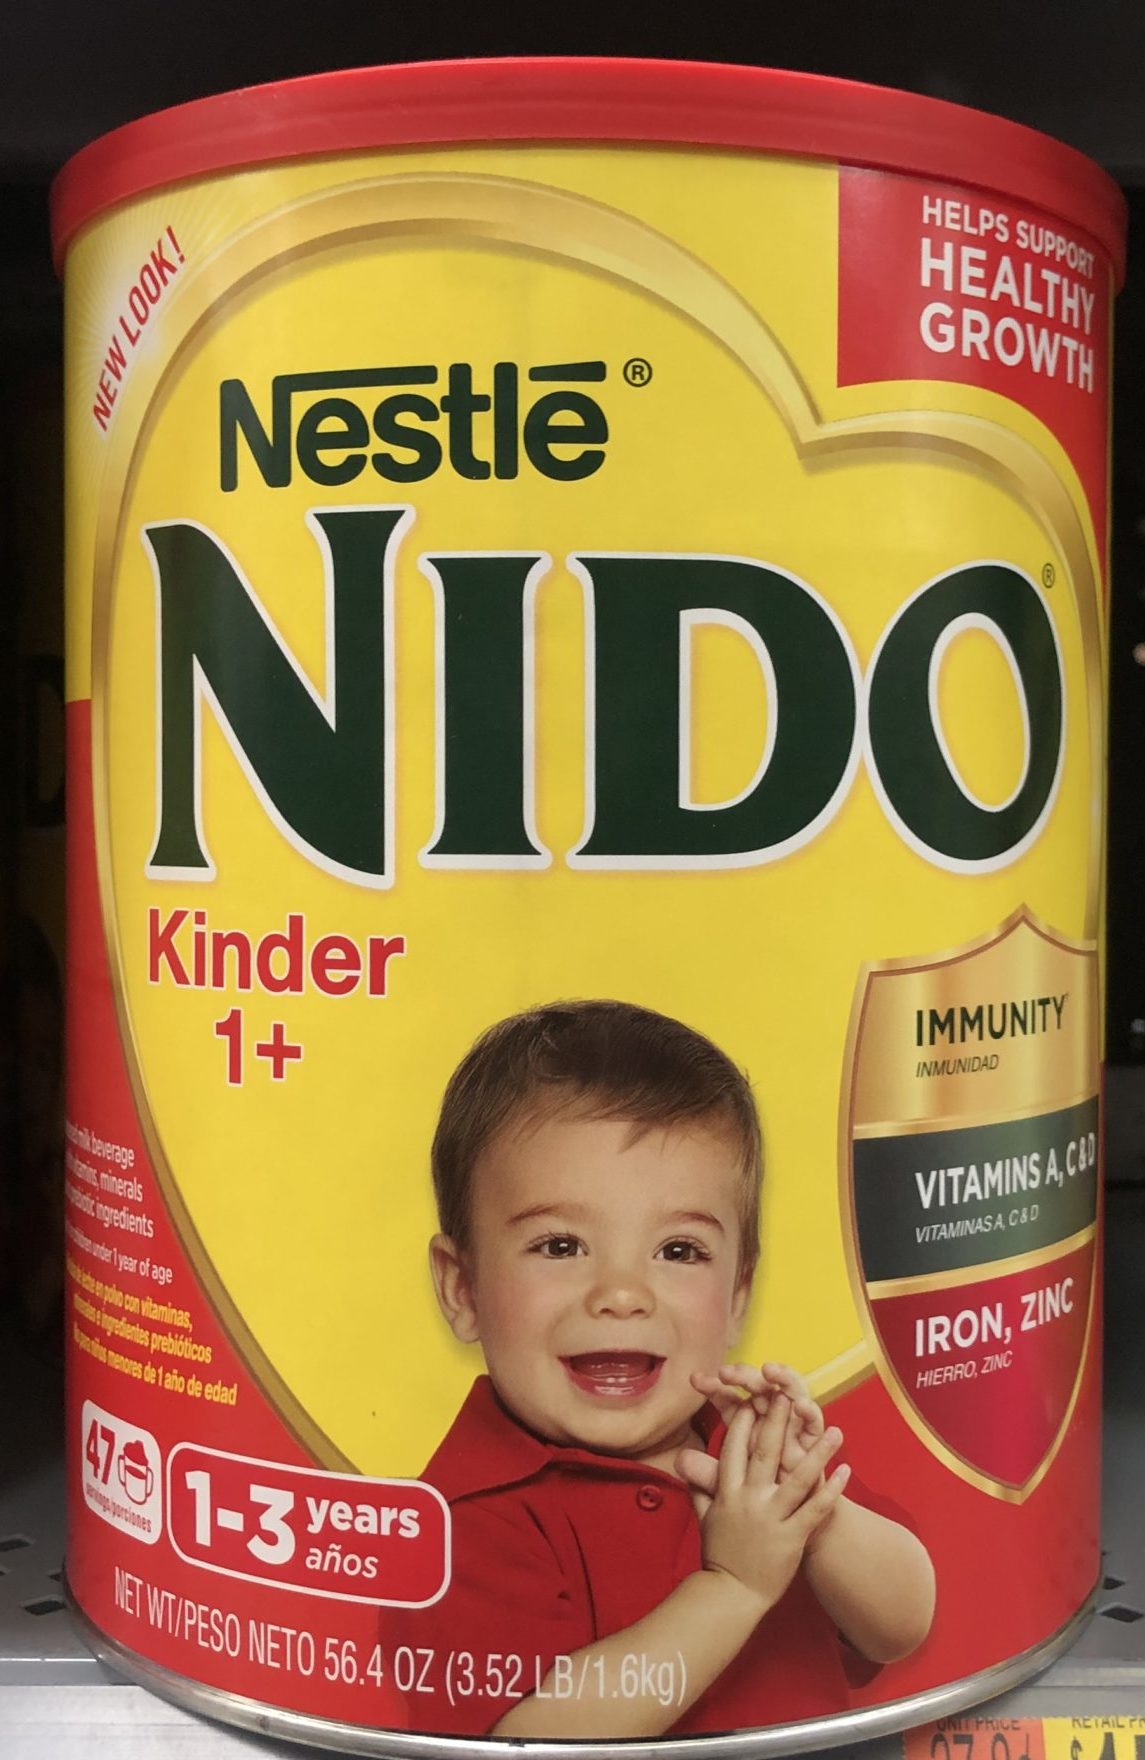 Nido Kinder 1+ Toddler Milk Beverage - Shop Milk at H-E-B